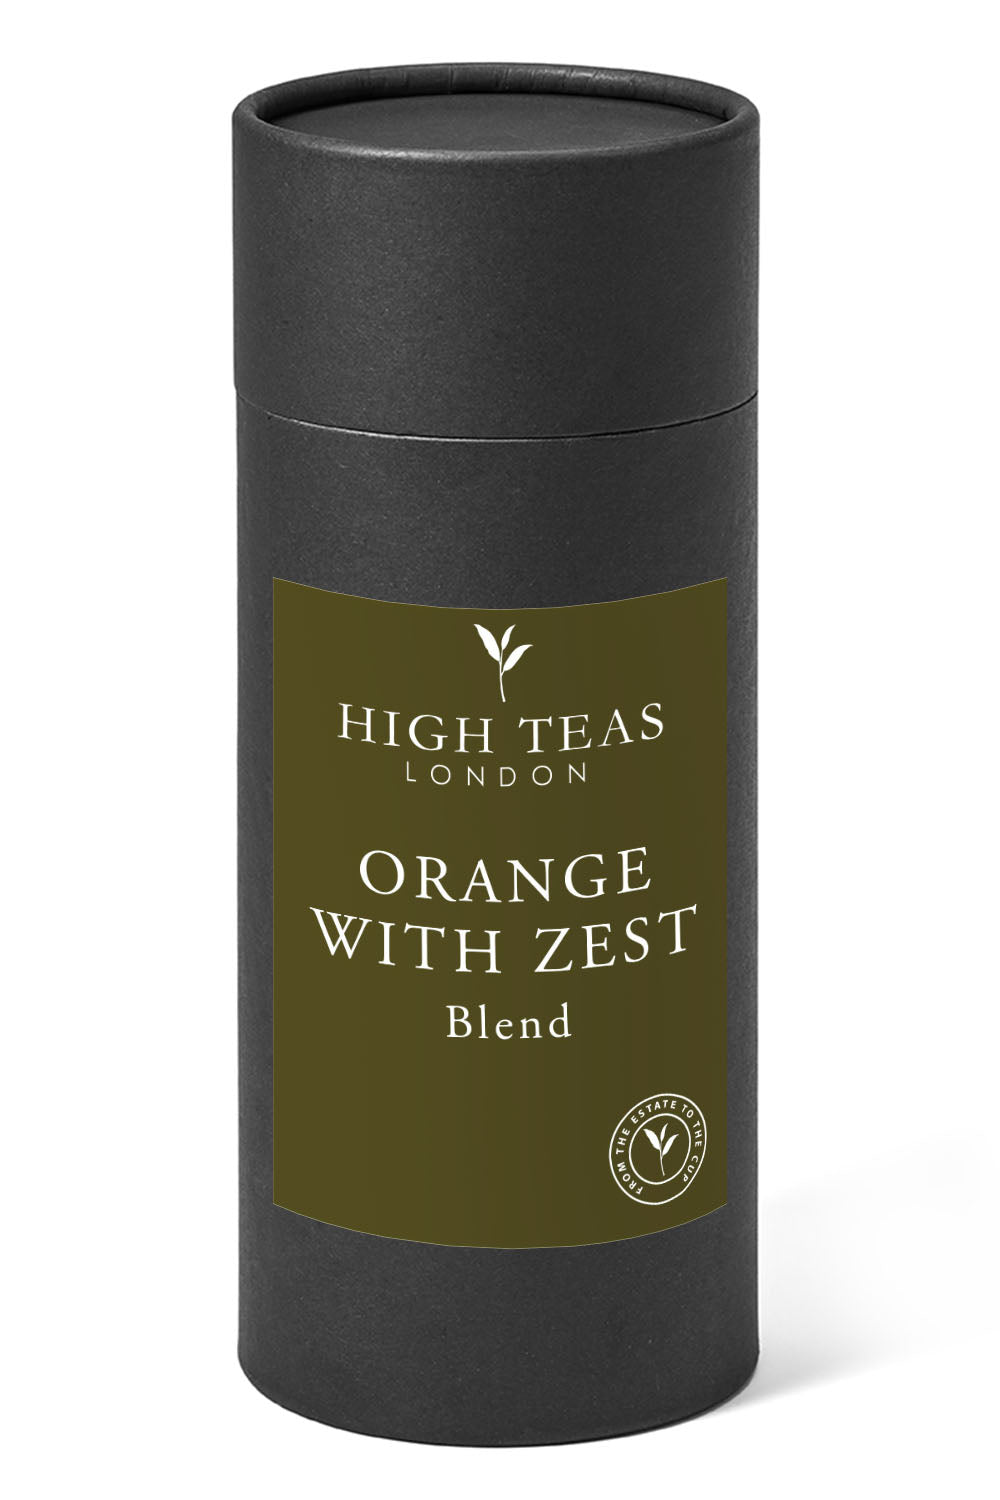 Orange with zests-150g gift-Loose Leaf Tea-High Teas